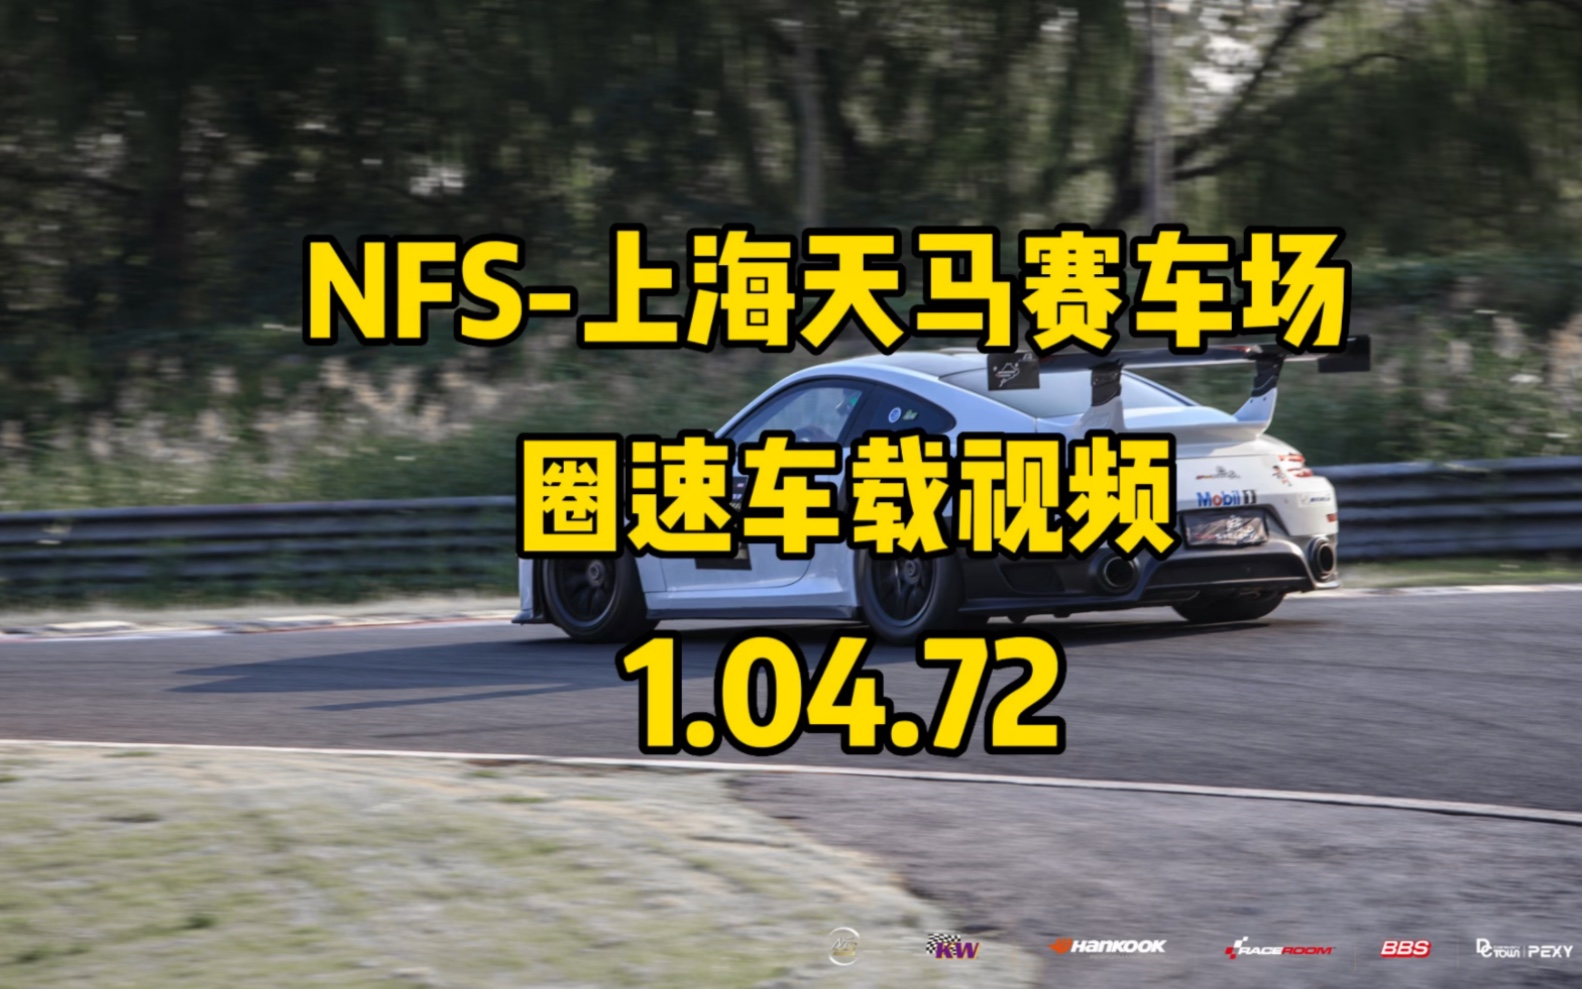 上海天马赛车场991turbos圈速1.04.7车载视频。